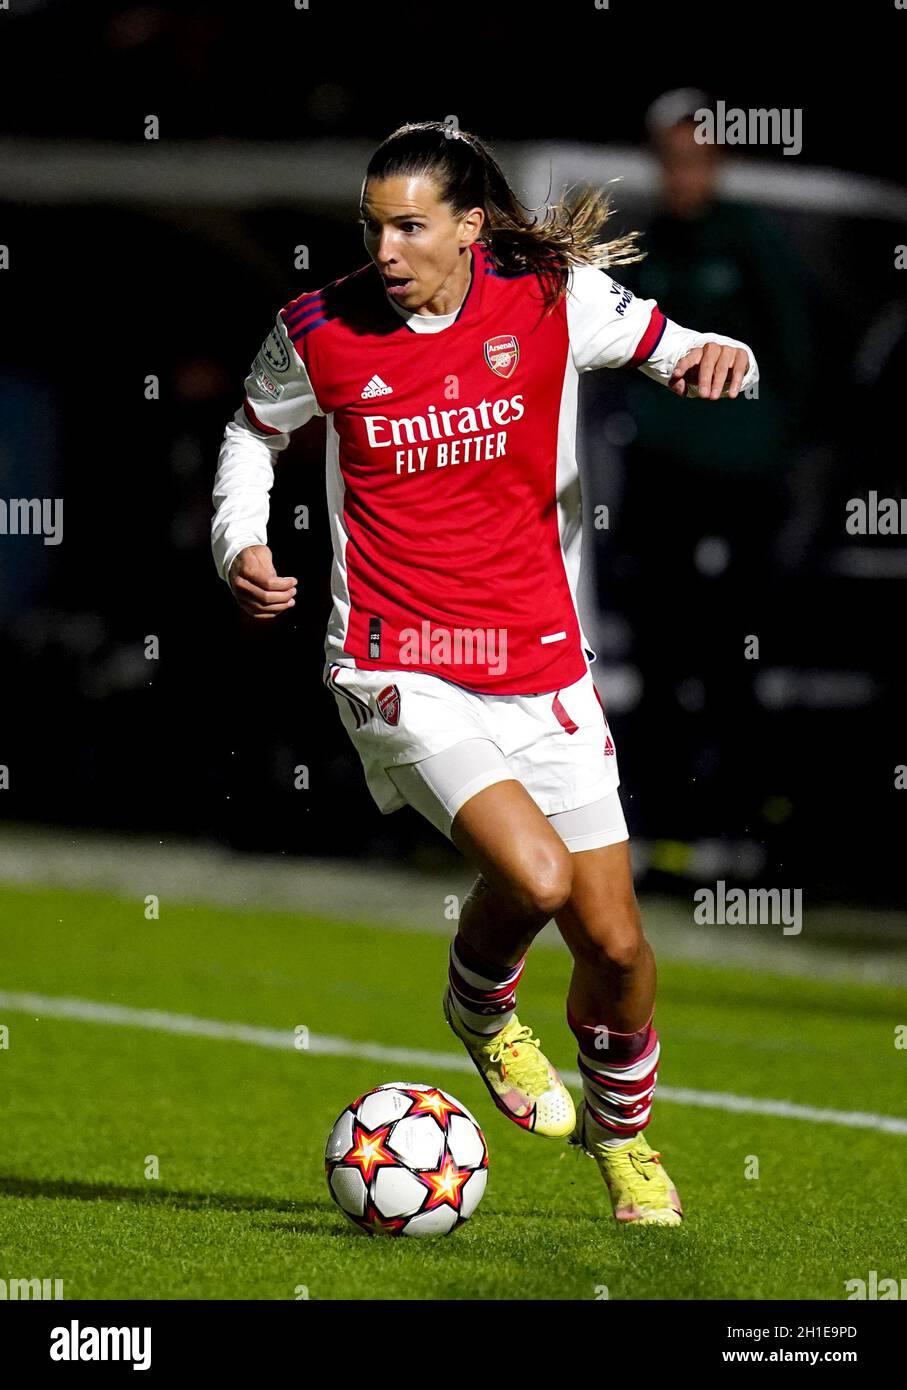 Tobin Heath von Arsenal beim UEFA Champions League-Spiel der Gruppe C der  Frauen im Meadow Park, London. Bilddatum: Donnerstag, 14. Oktober 2021  Stockfotografie - Alamy